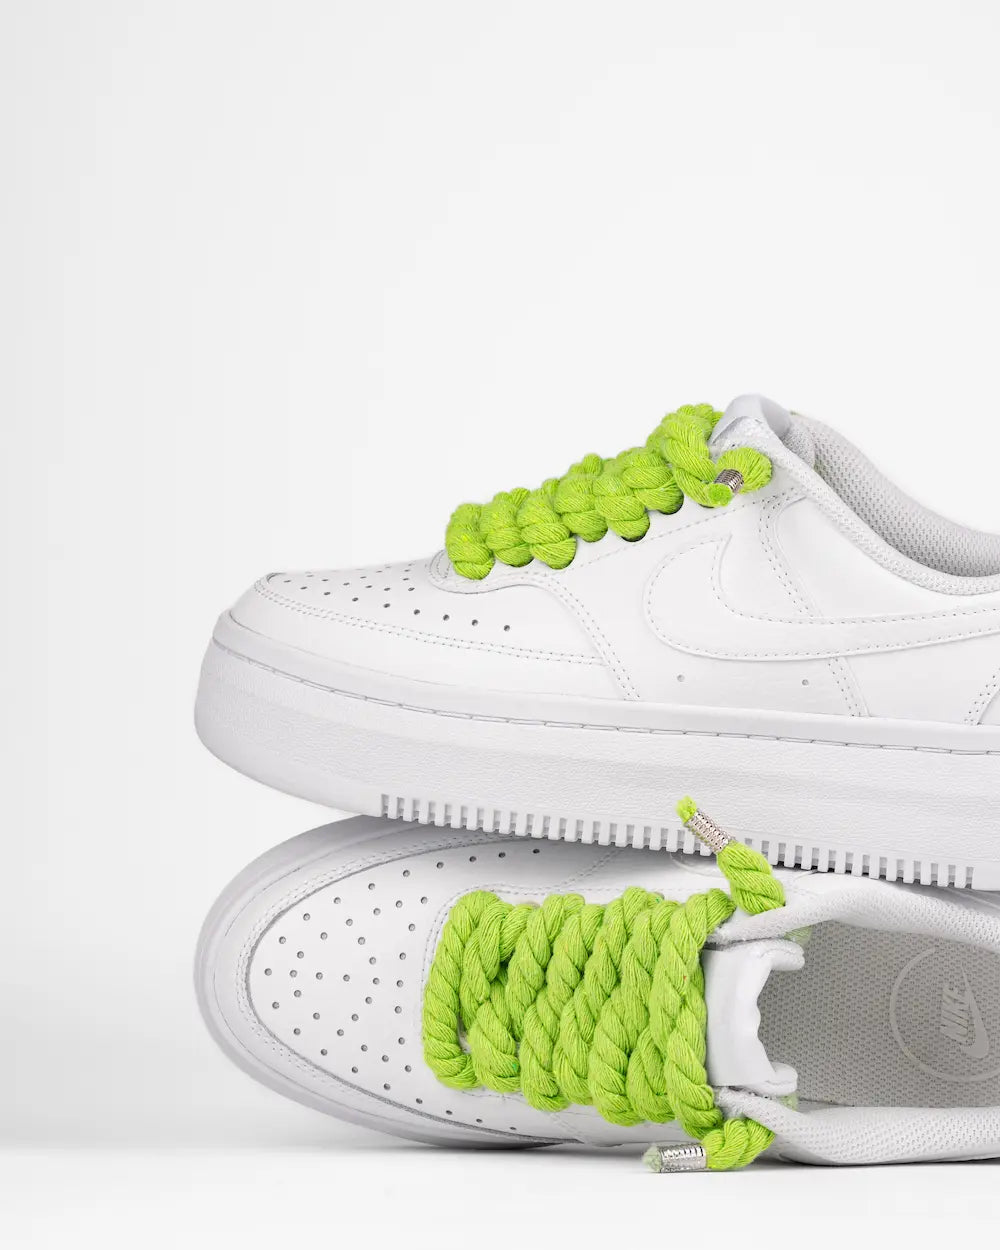 Nike Court Vision Platform personalizzata con lacci in corda color lime